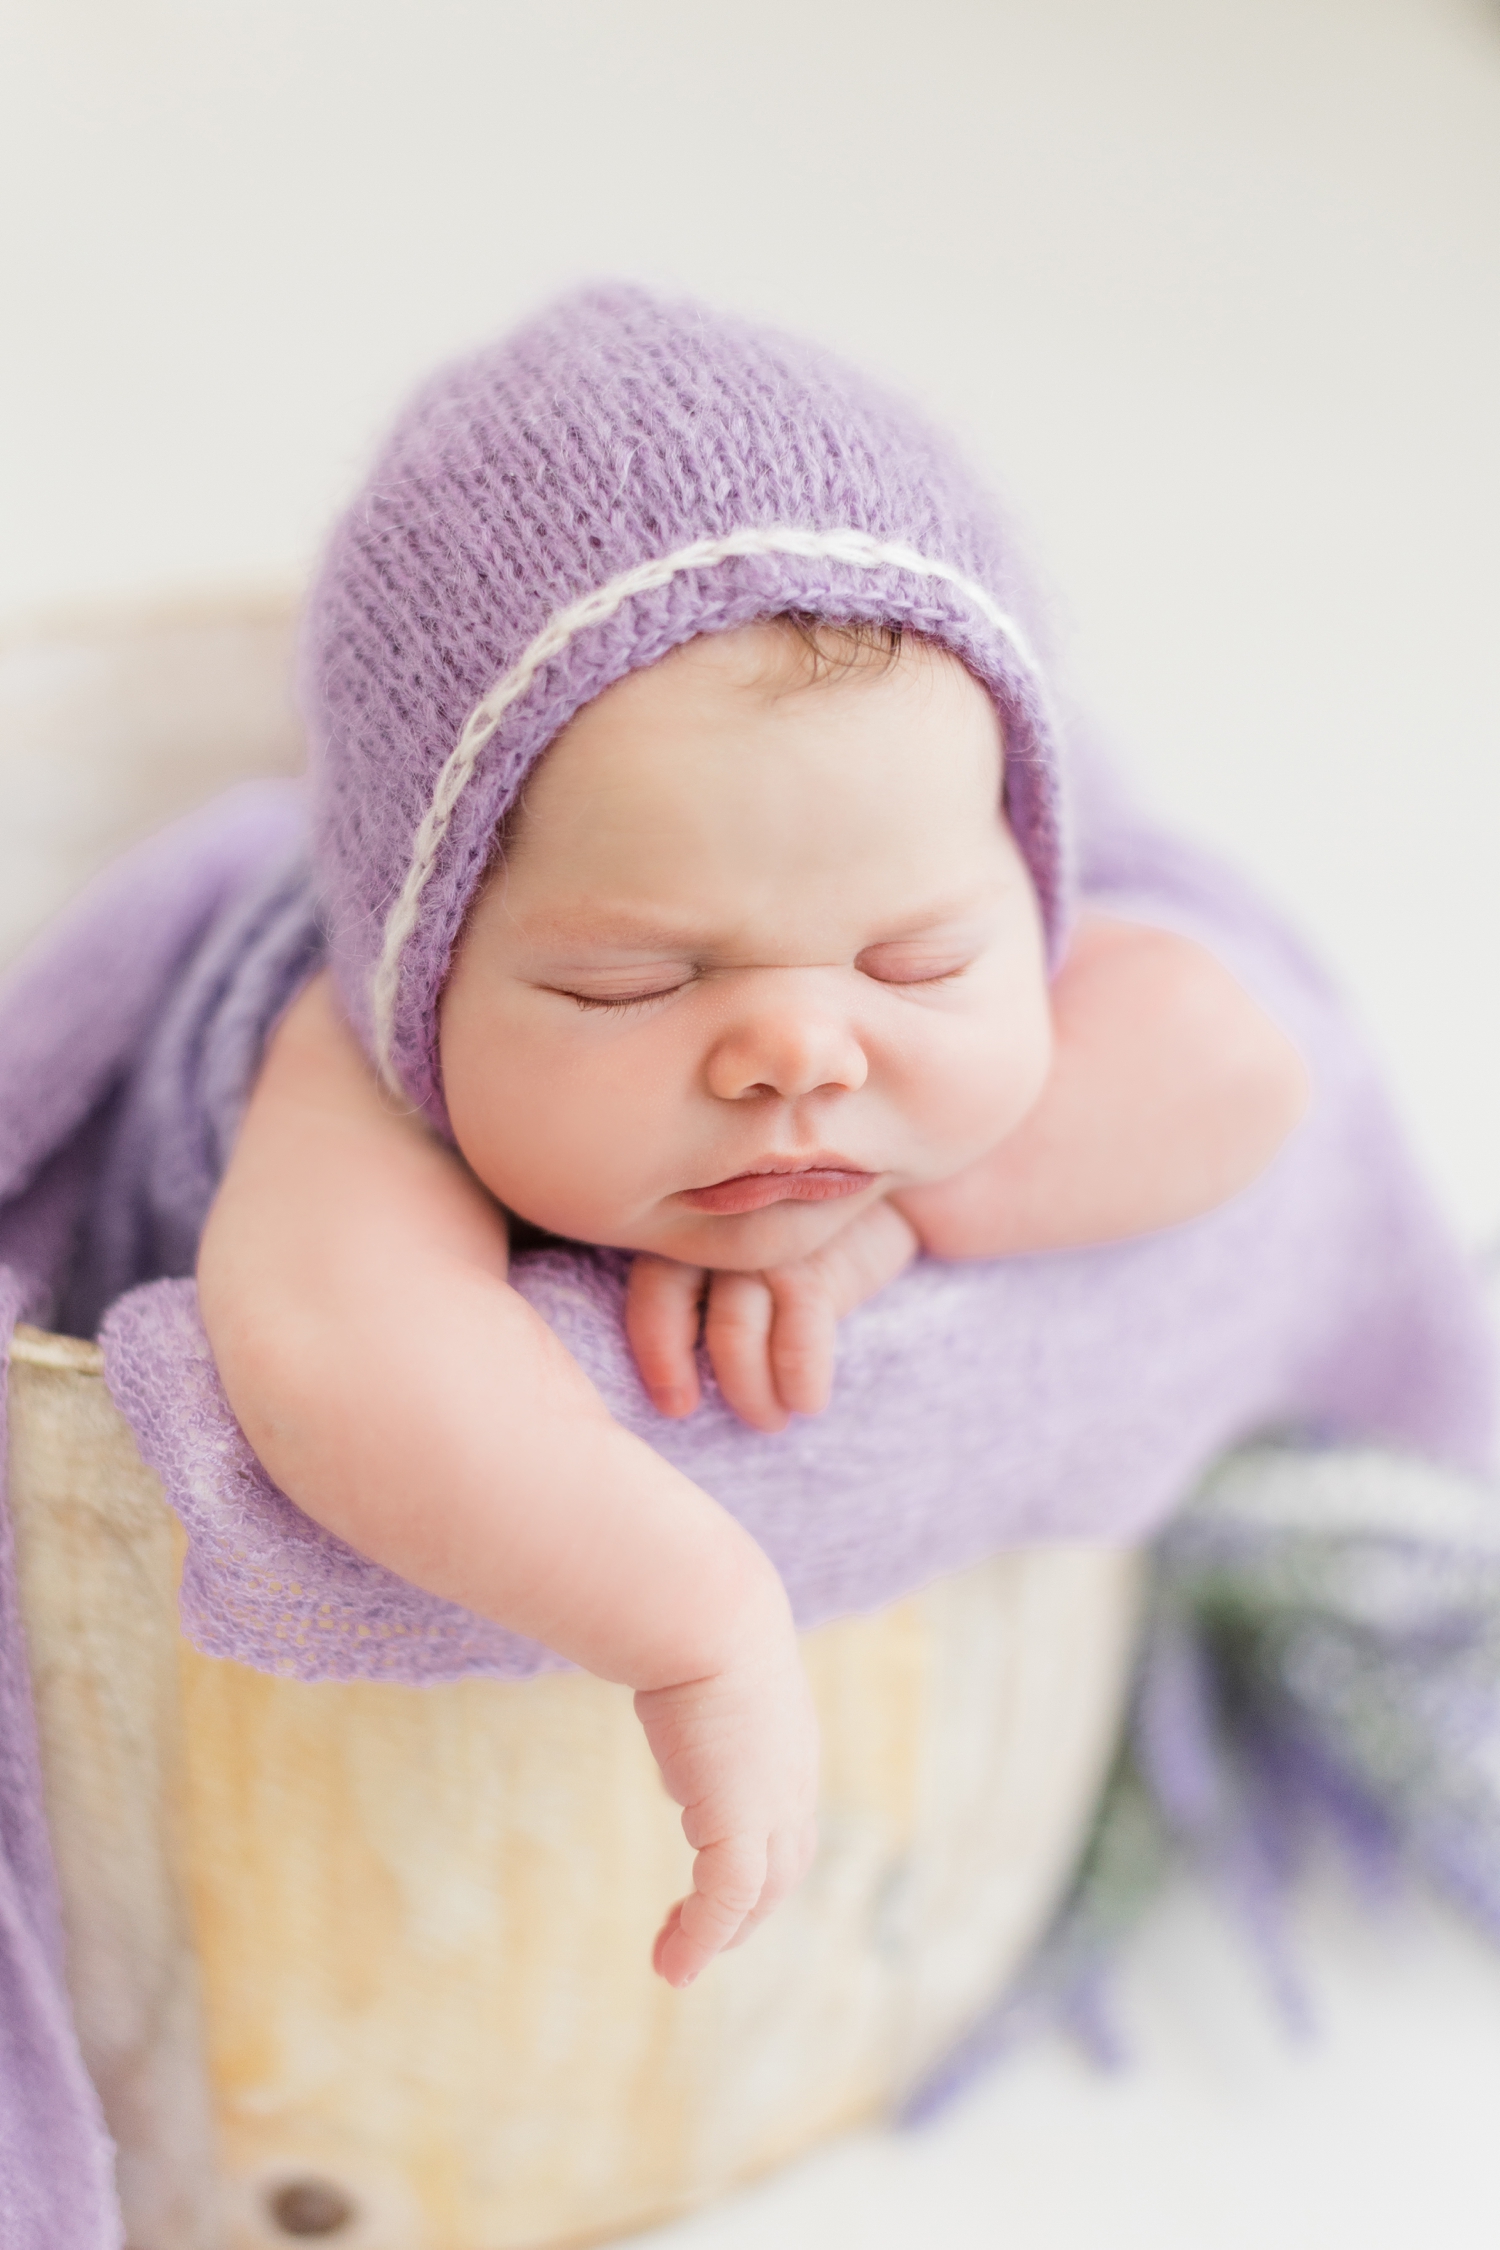 Baby Emersyn dressed in a purple bonnet sleeps peacefully in a bucket | CB Studio